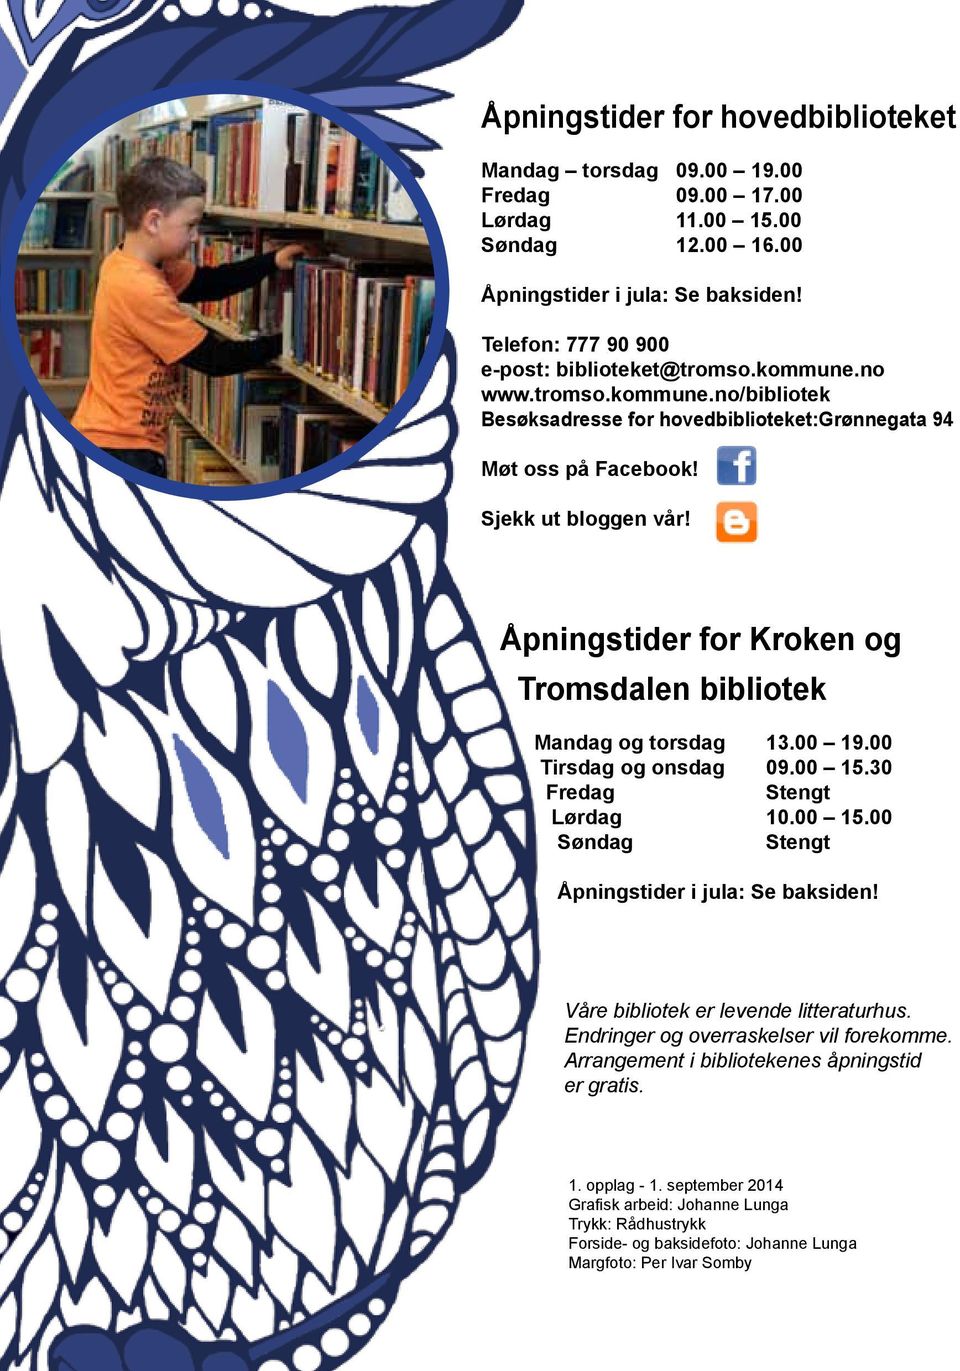 Åpningstider for Kroken og Tromsdalen bibliotek Mandag og torsdag 13.00 19.00 Tirsdag og onsdag 09.00 15.30 Fredag Stengt Lørdag 10.00 15.00 Søndag Stengt Åpningstider i jula: Se baksiden!